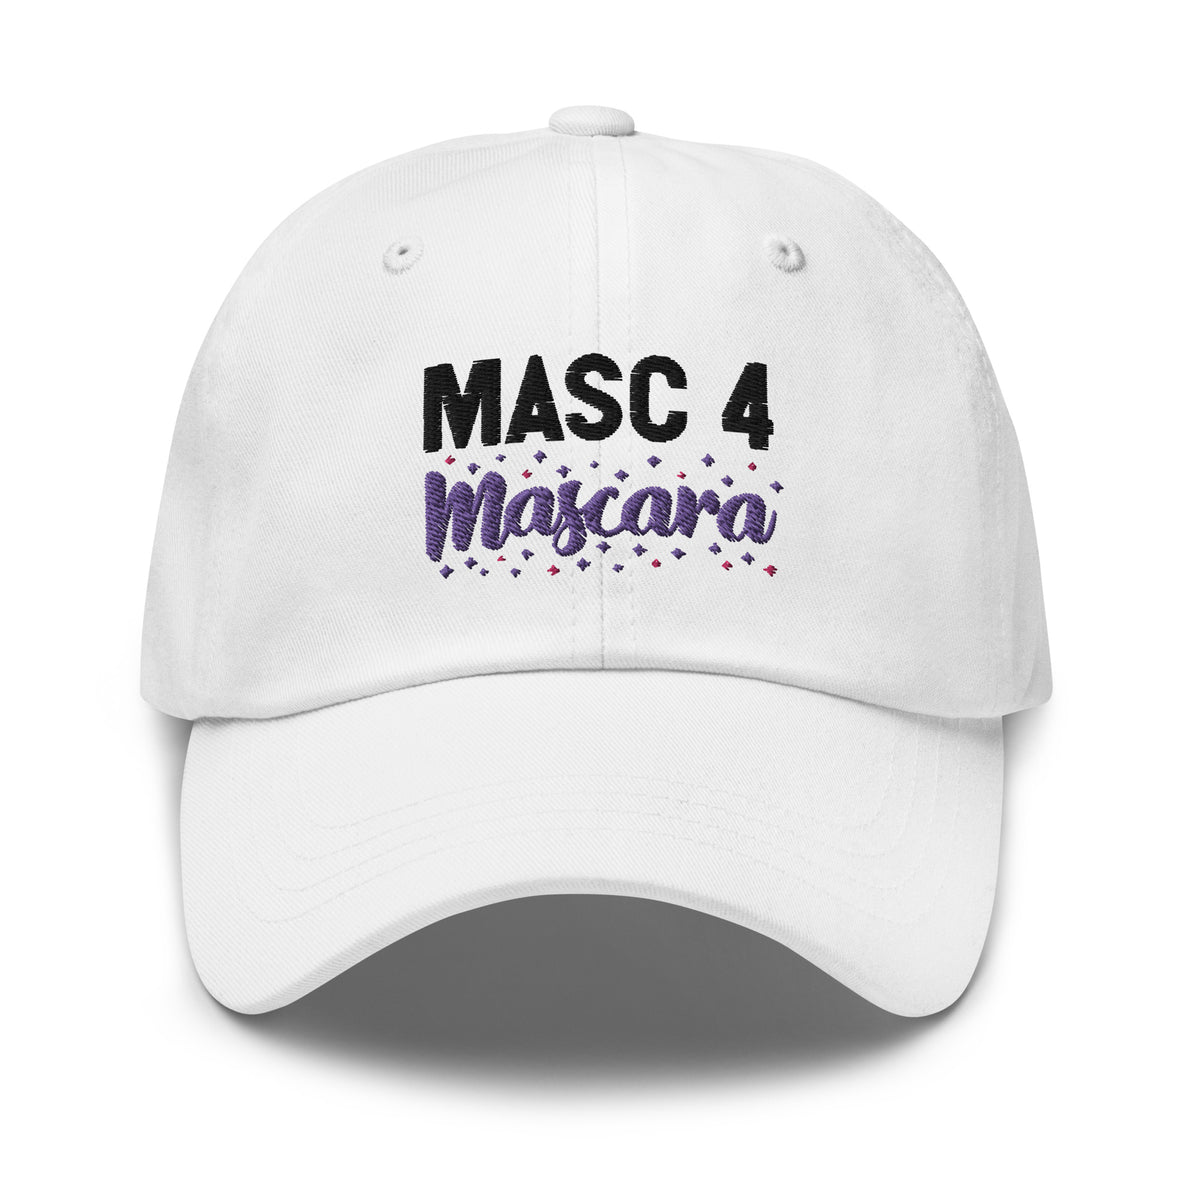 Masc 4 Mascara Cap